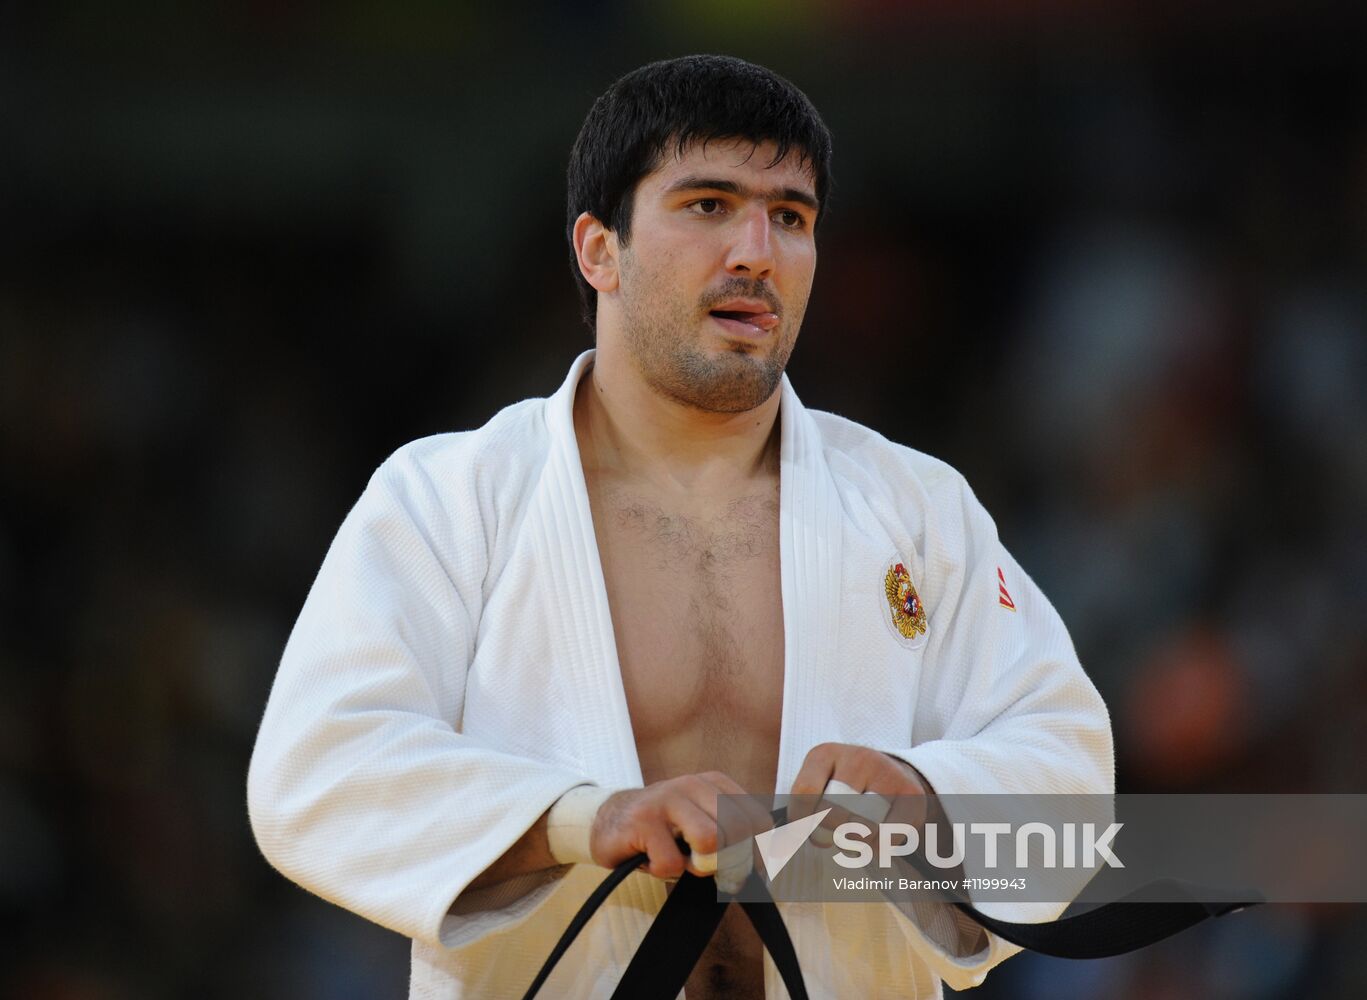 Olympics 2012 Judo. Day Six